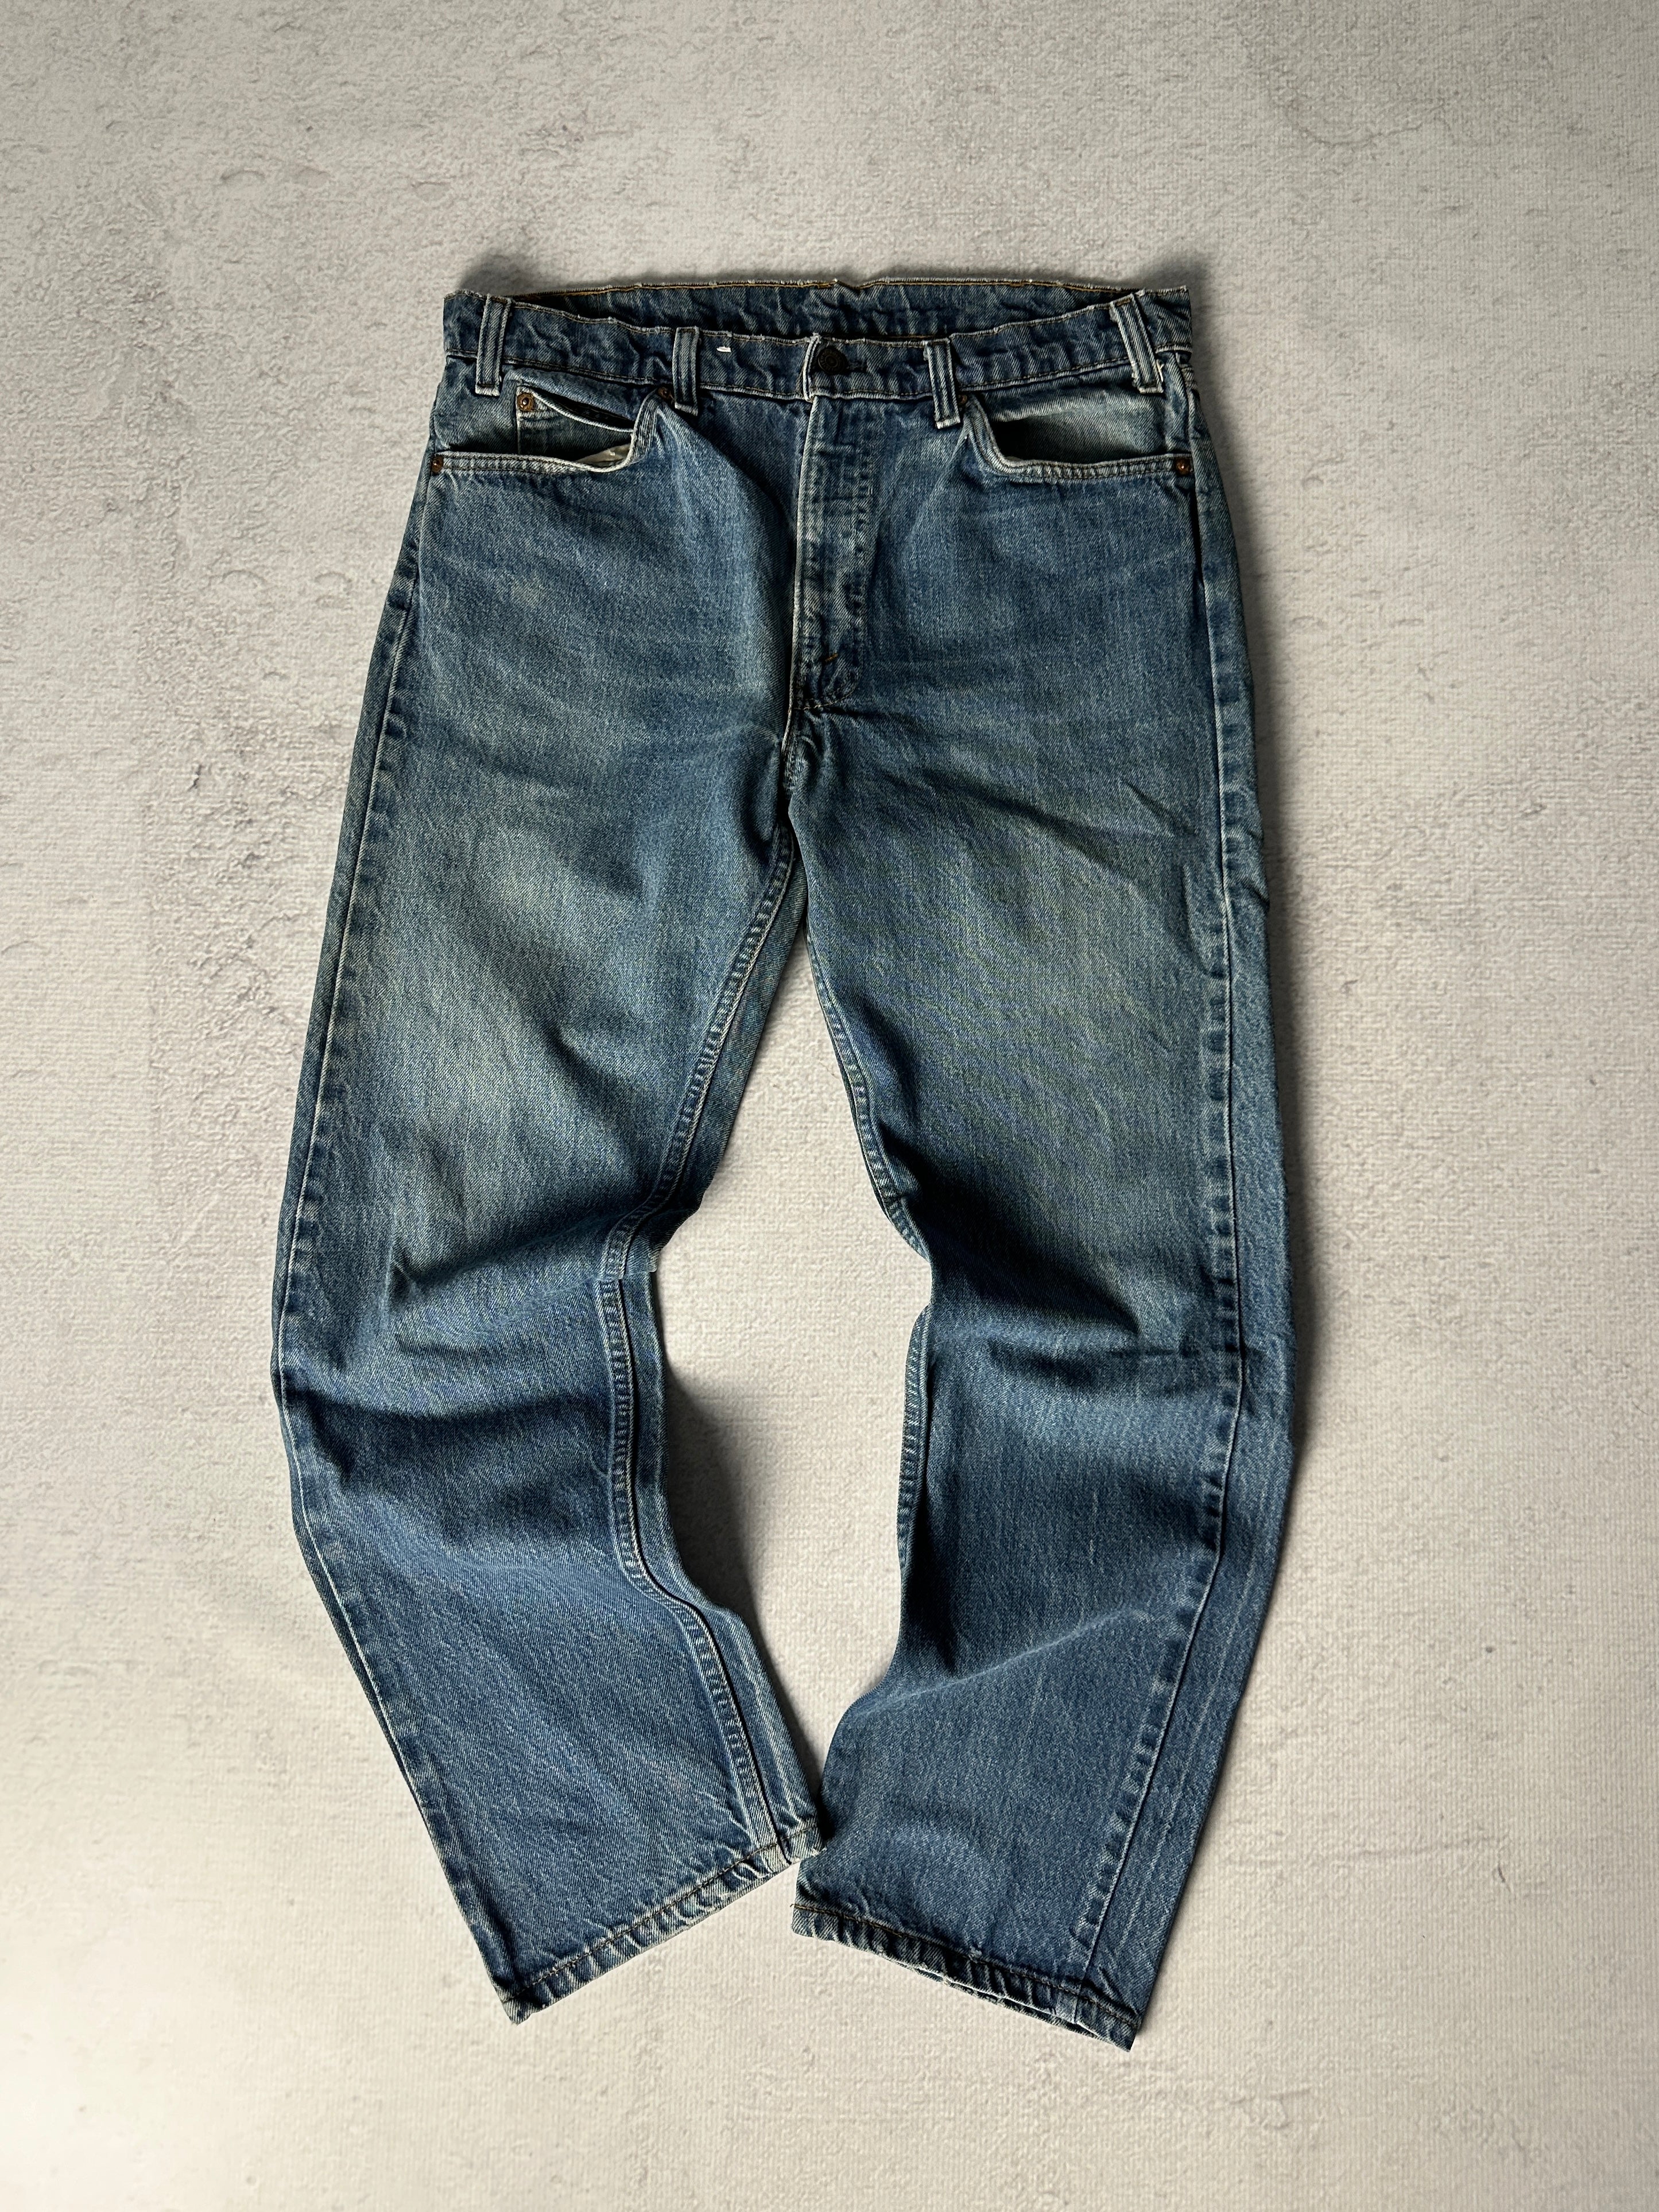 Vintage Levis Orange Tab Jeans - Men's 36W30L